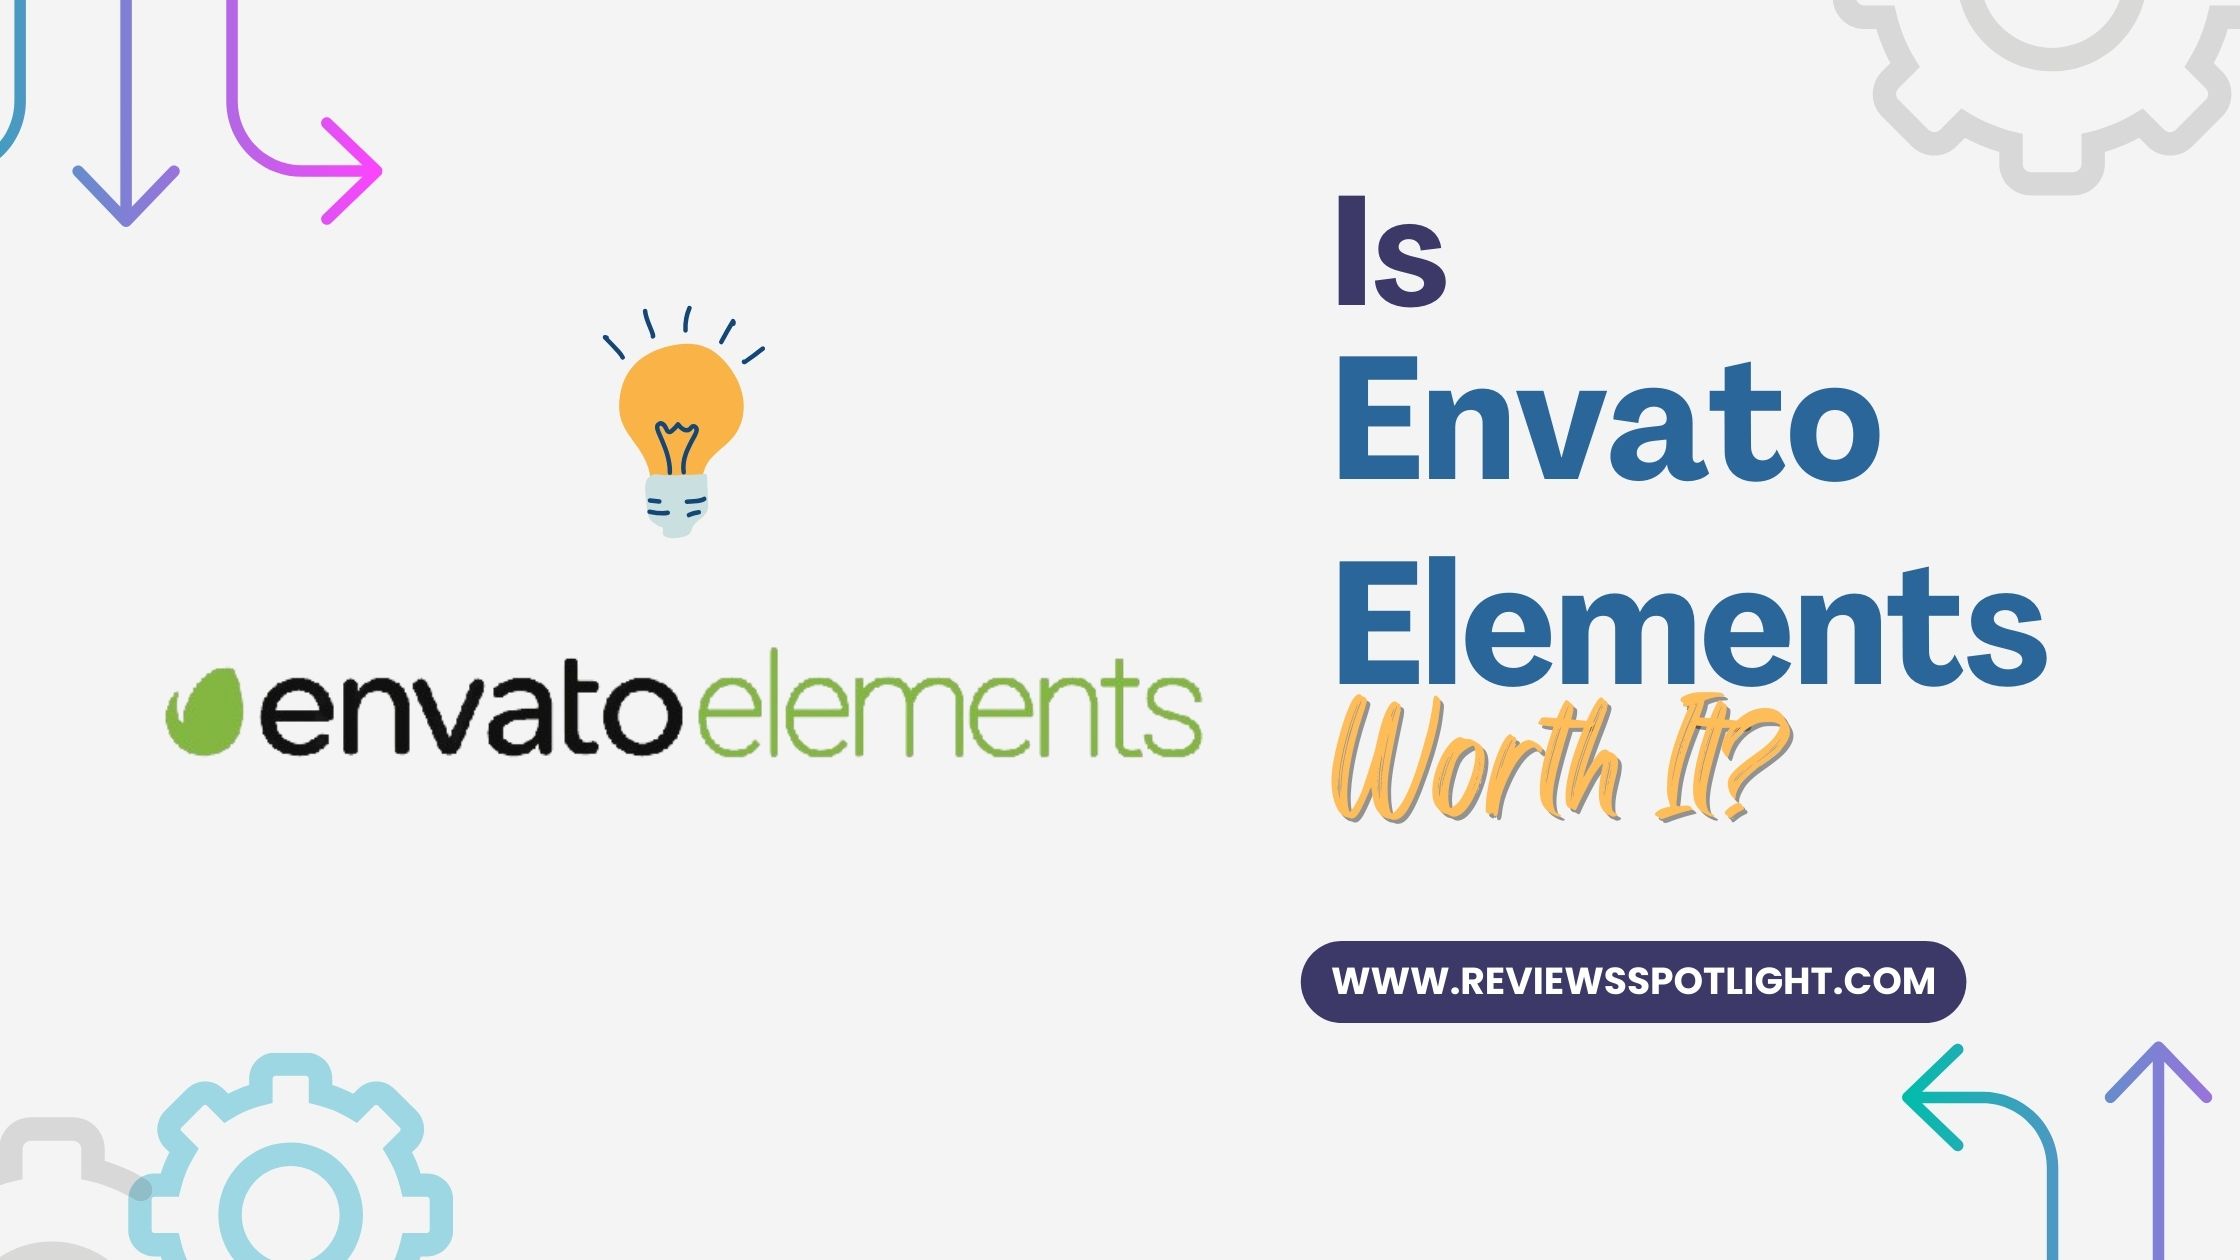 envato-elements-review